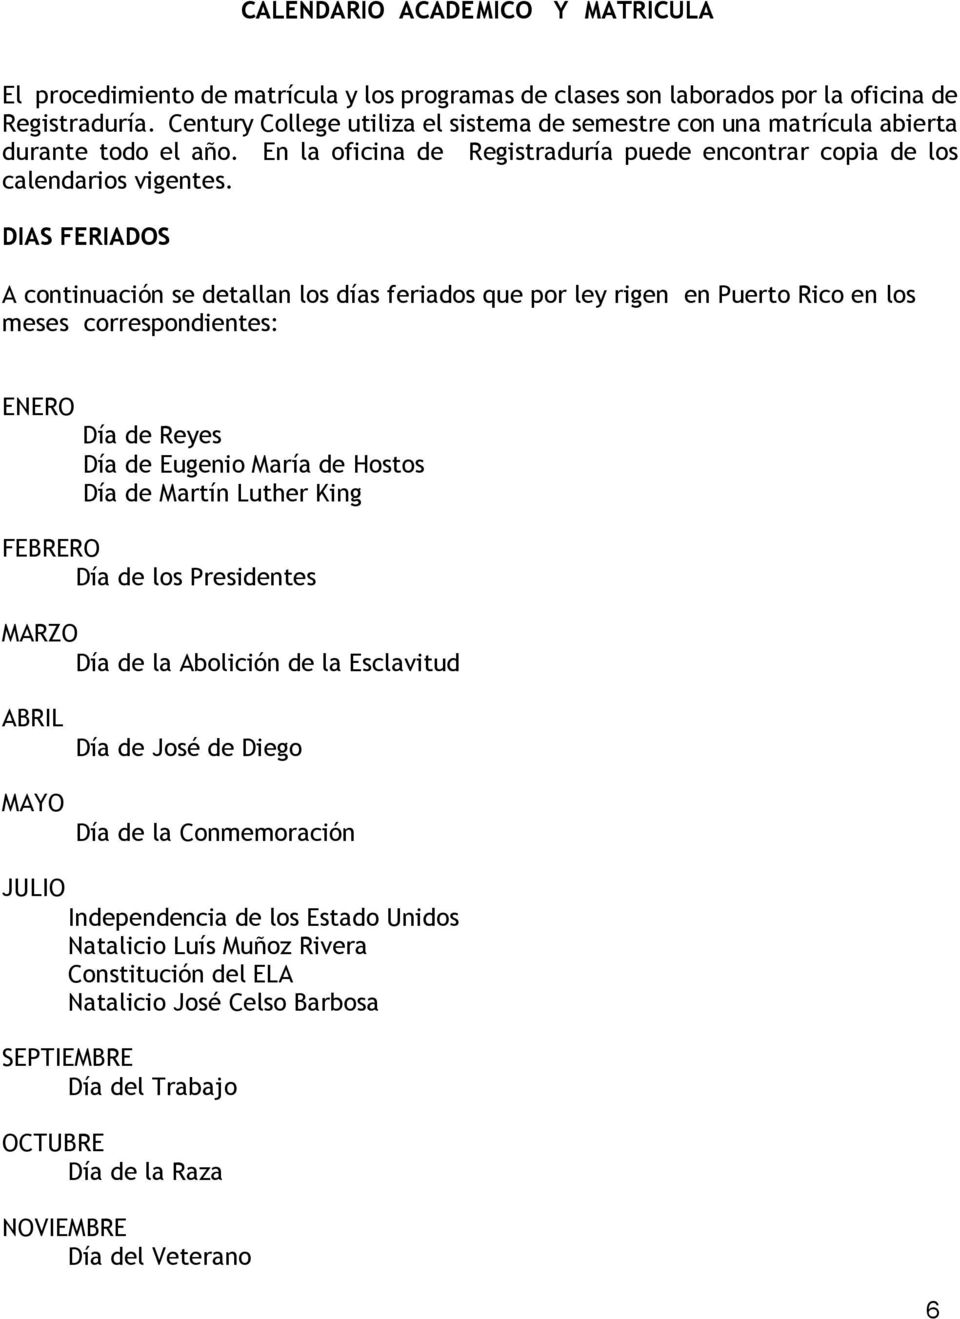 DIAS FERIADOS A continuación se detallan los días feriados que por ley rigen en Puerto Rico en los meses correspondientes: ENERO Día de Reyes Día de Eugenio María de Hostos Día de Martín Luther King